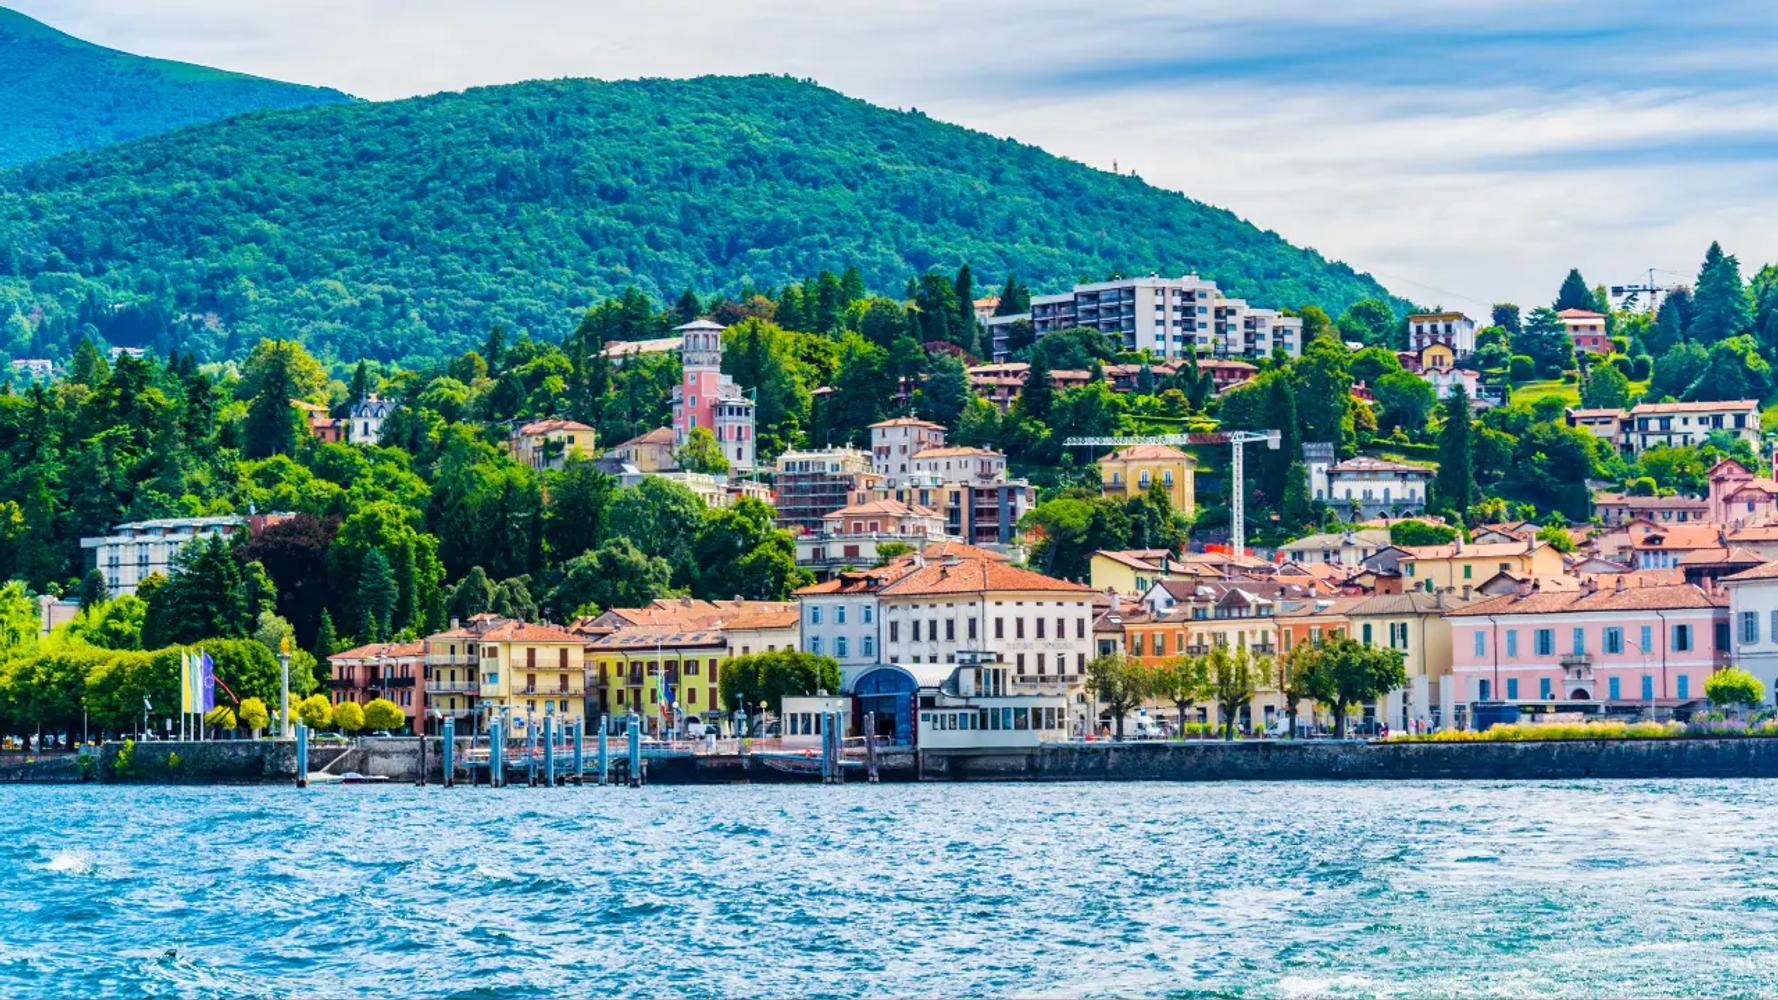 Glimpse of Lago Maggiore